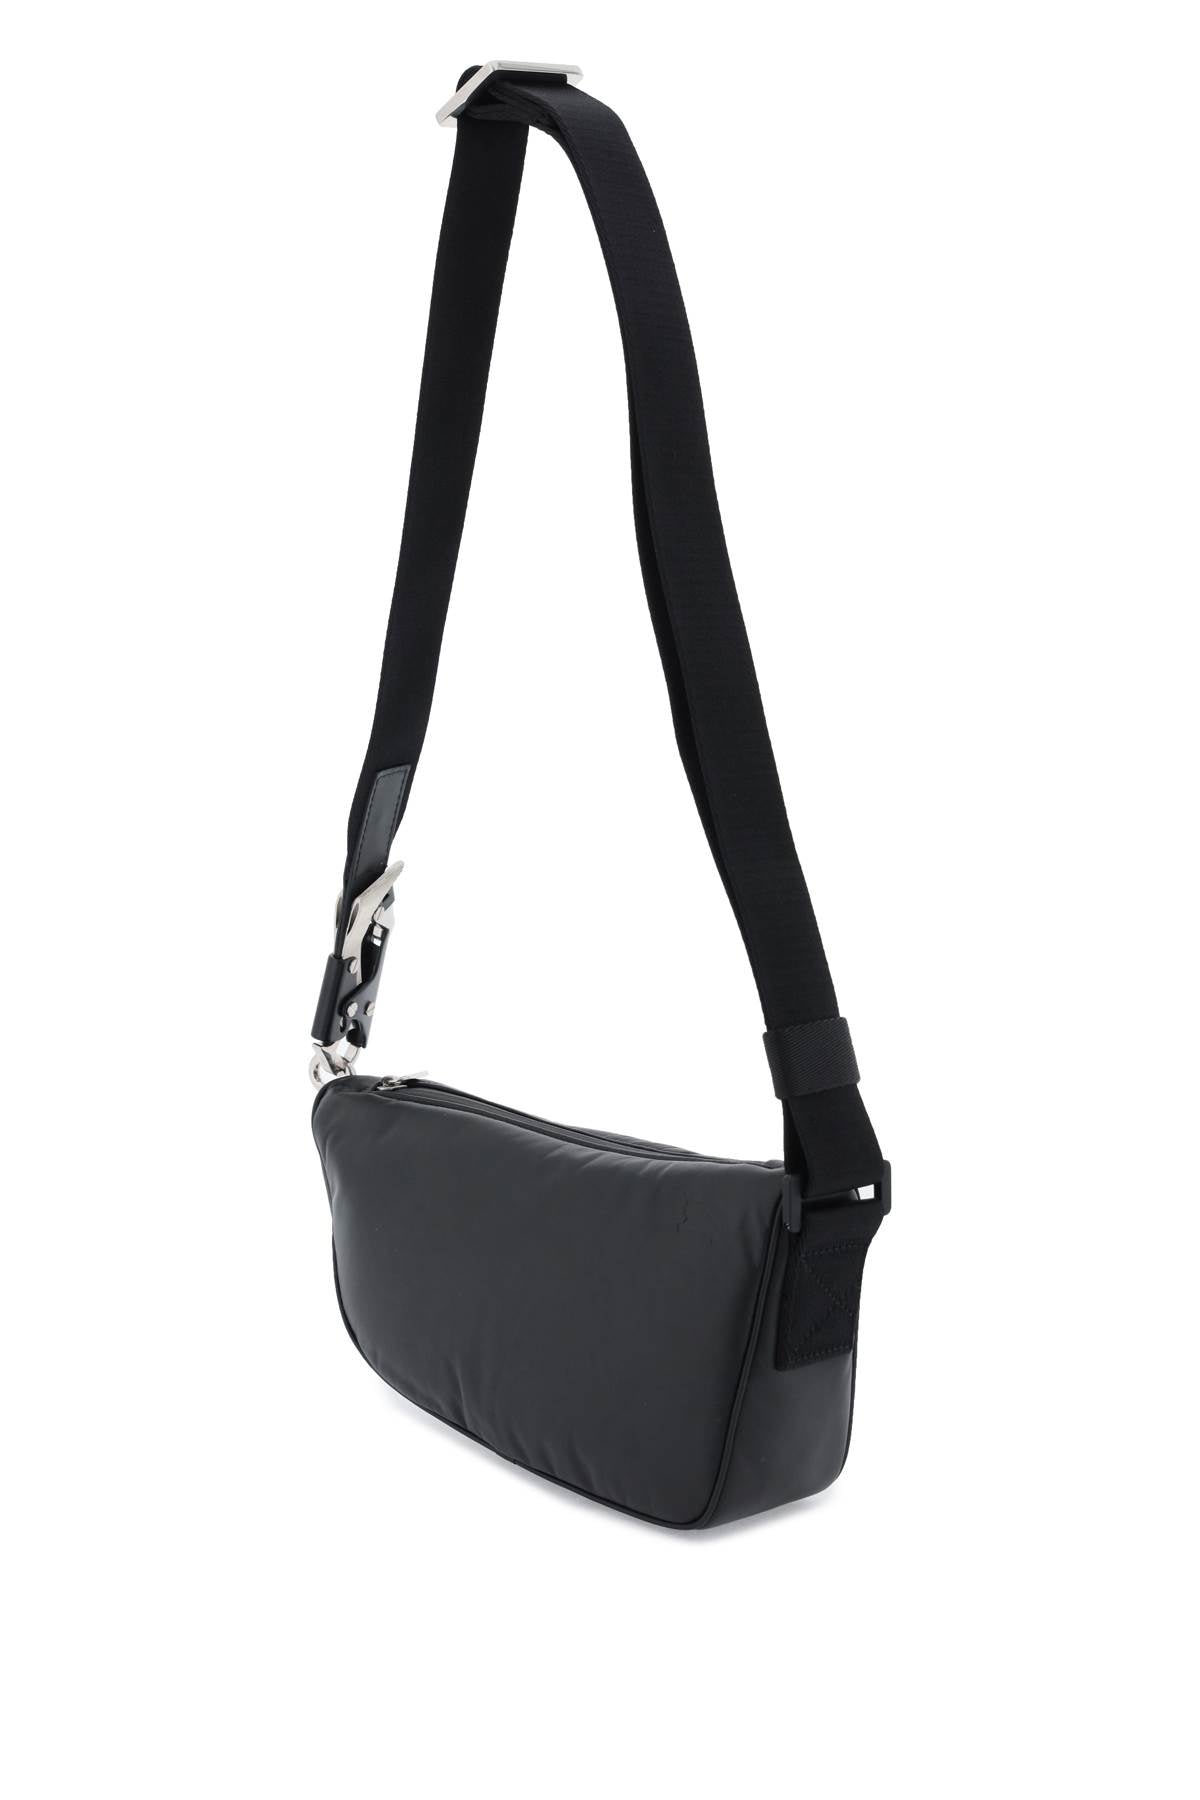 Túi đeo chéo Burberry Shield màu đen cho phụ nữ